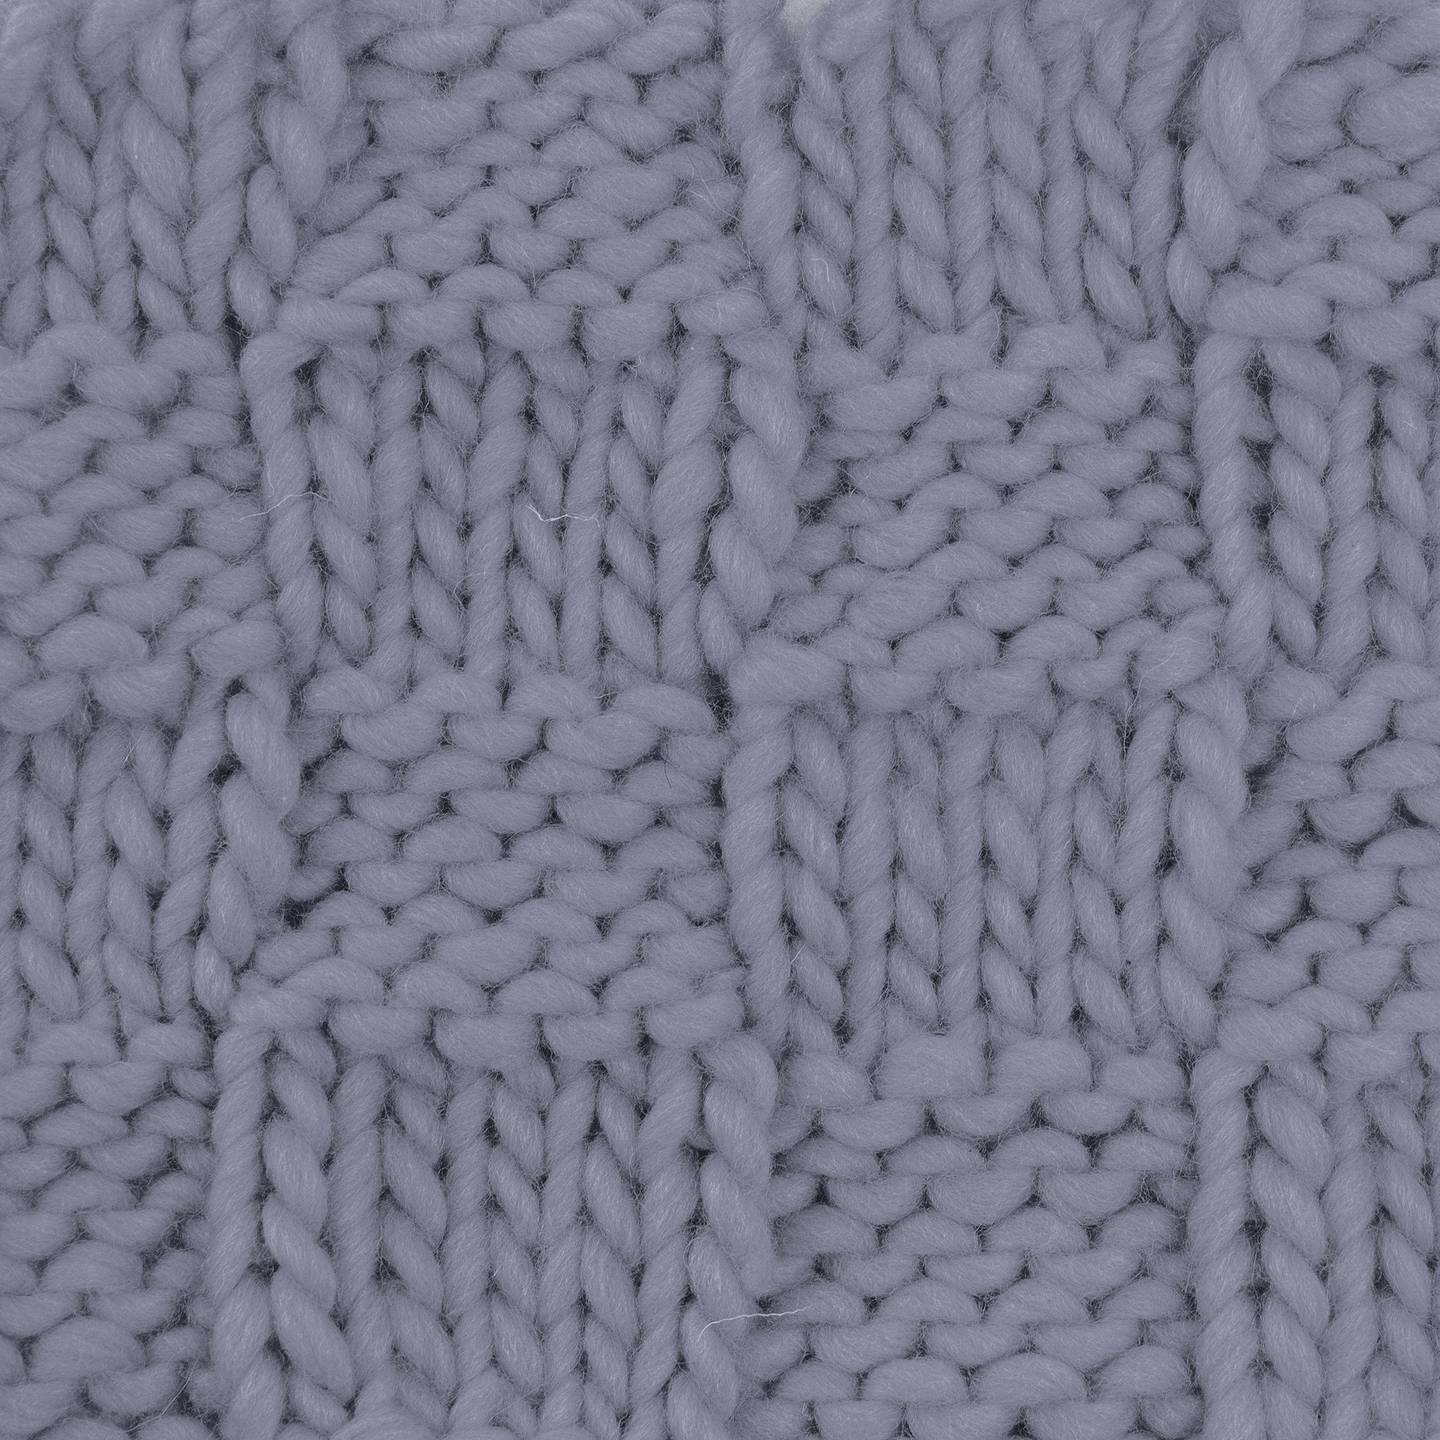 Bulky Wool Yarn • PAPER SCISSORS STONE